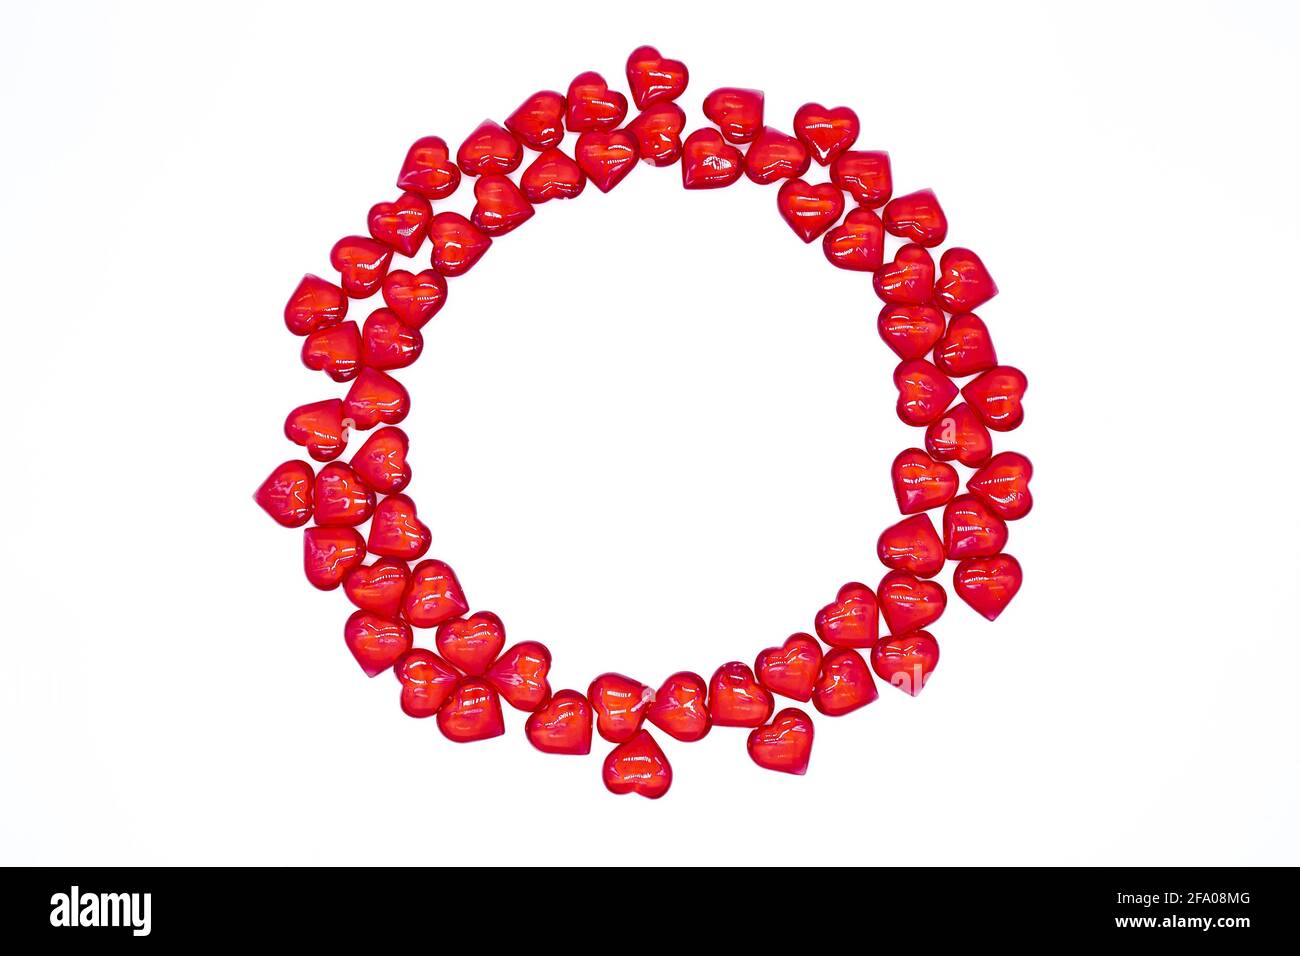 Leuchtend rote Herzen glänzen, Glas liegt in Form eines runden Rahmens auf weißem Hintergrund. Konzept der Liebe, Ehe, Hochzeit, Valentinstag, Leidenschaft Stockfoto